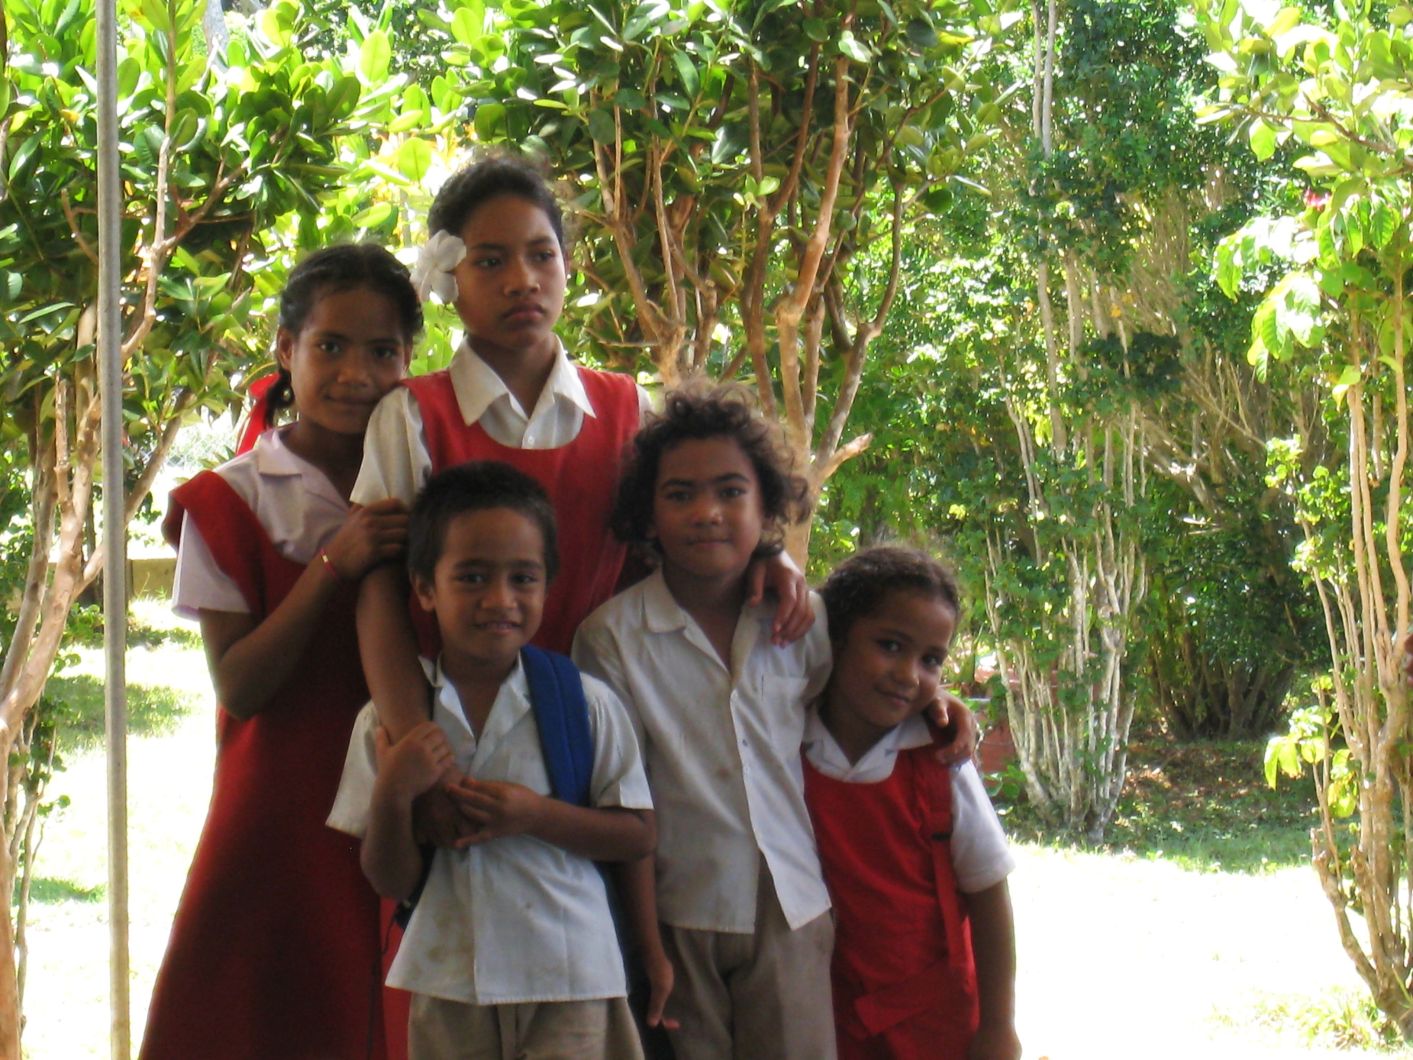 Tongan Children in School Uniforms